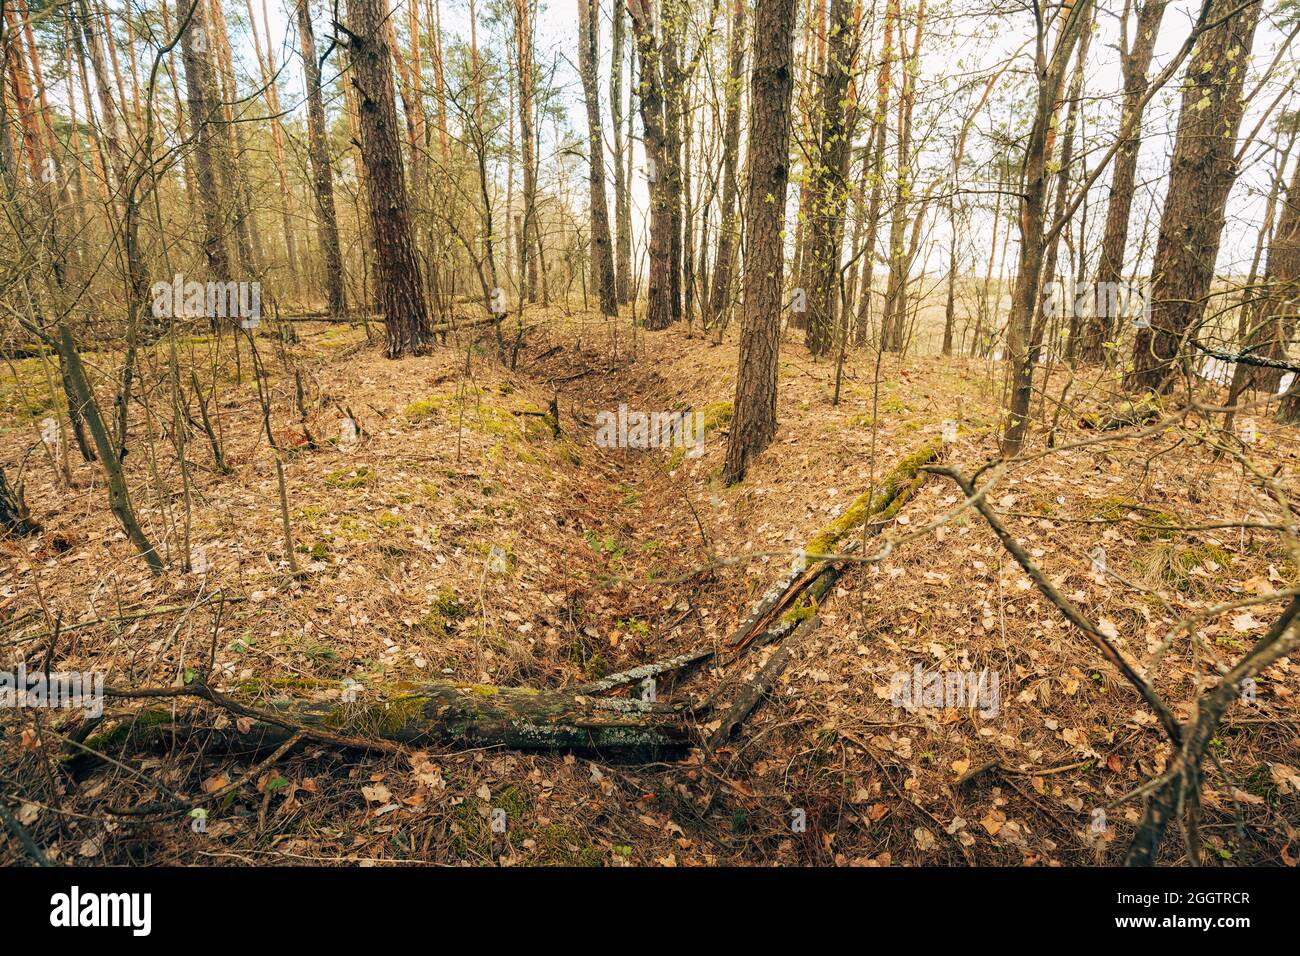 Anciennes tranchées abandonnées de la Seconde Guerre mondiale dans Forest depuis la Seconde Guerre mondiale en Biélorussie. Début du printemps ou de la saison d'automne Banque D'Images